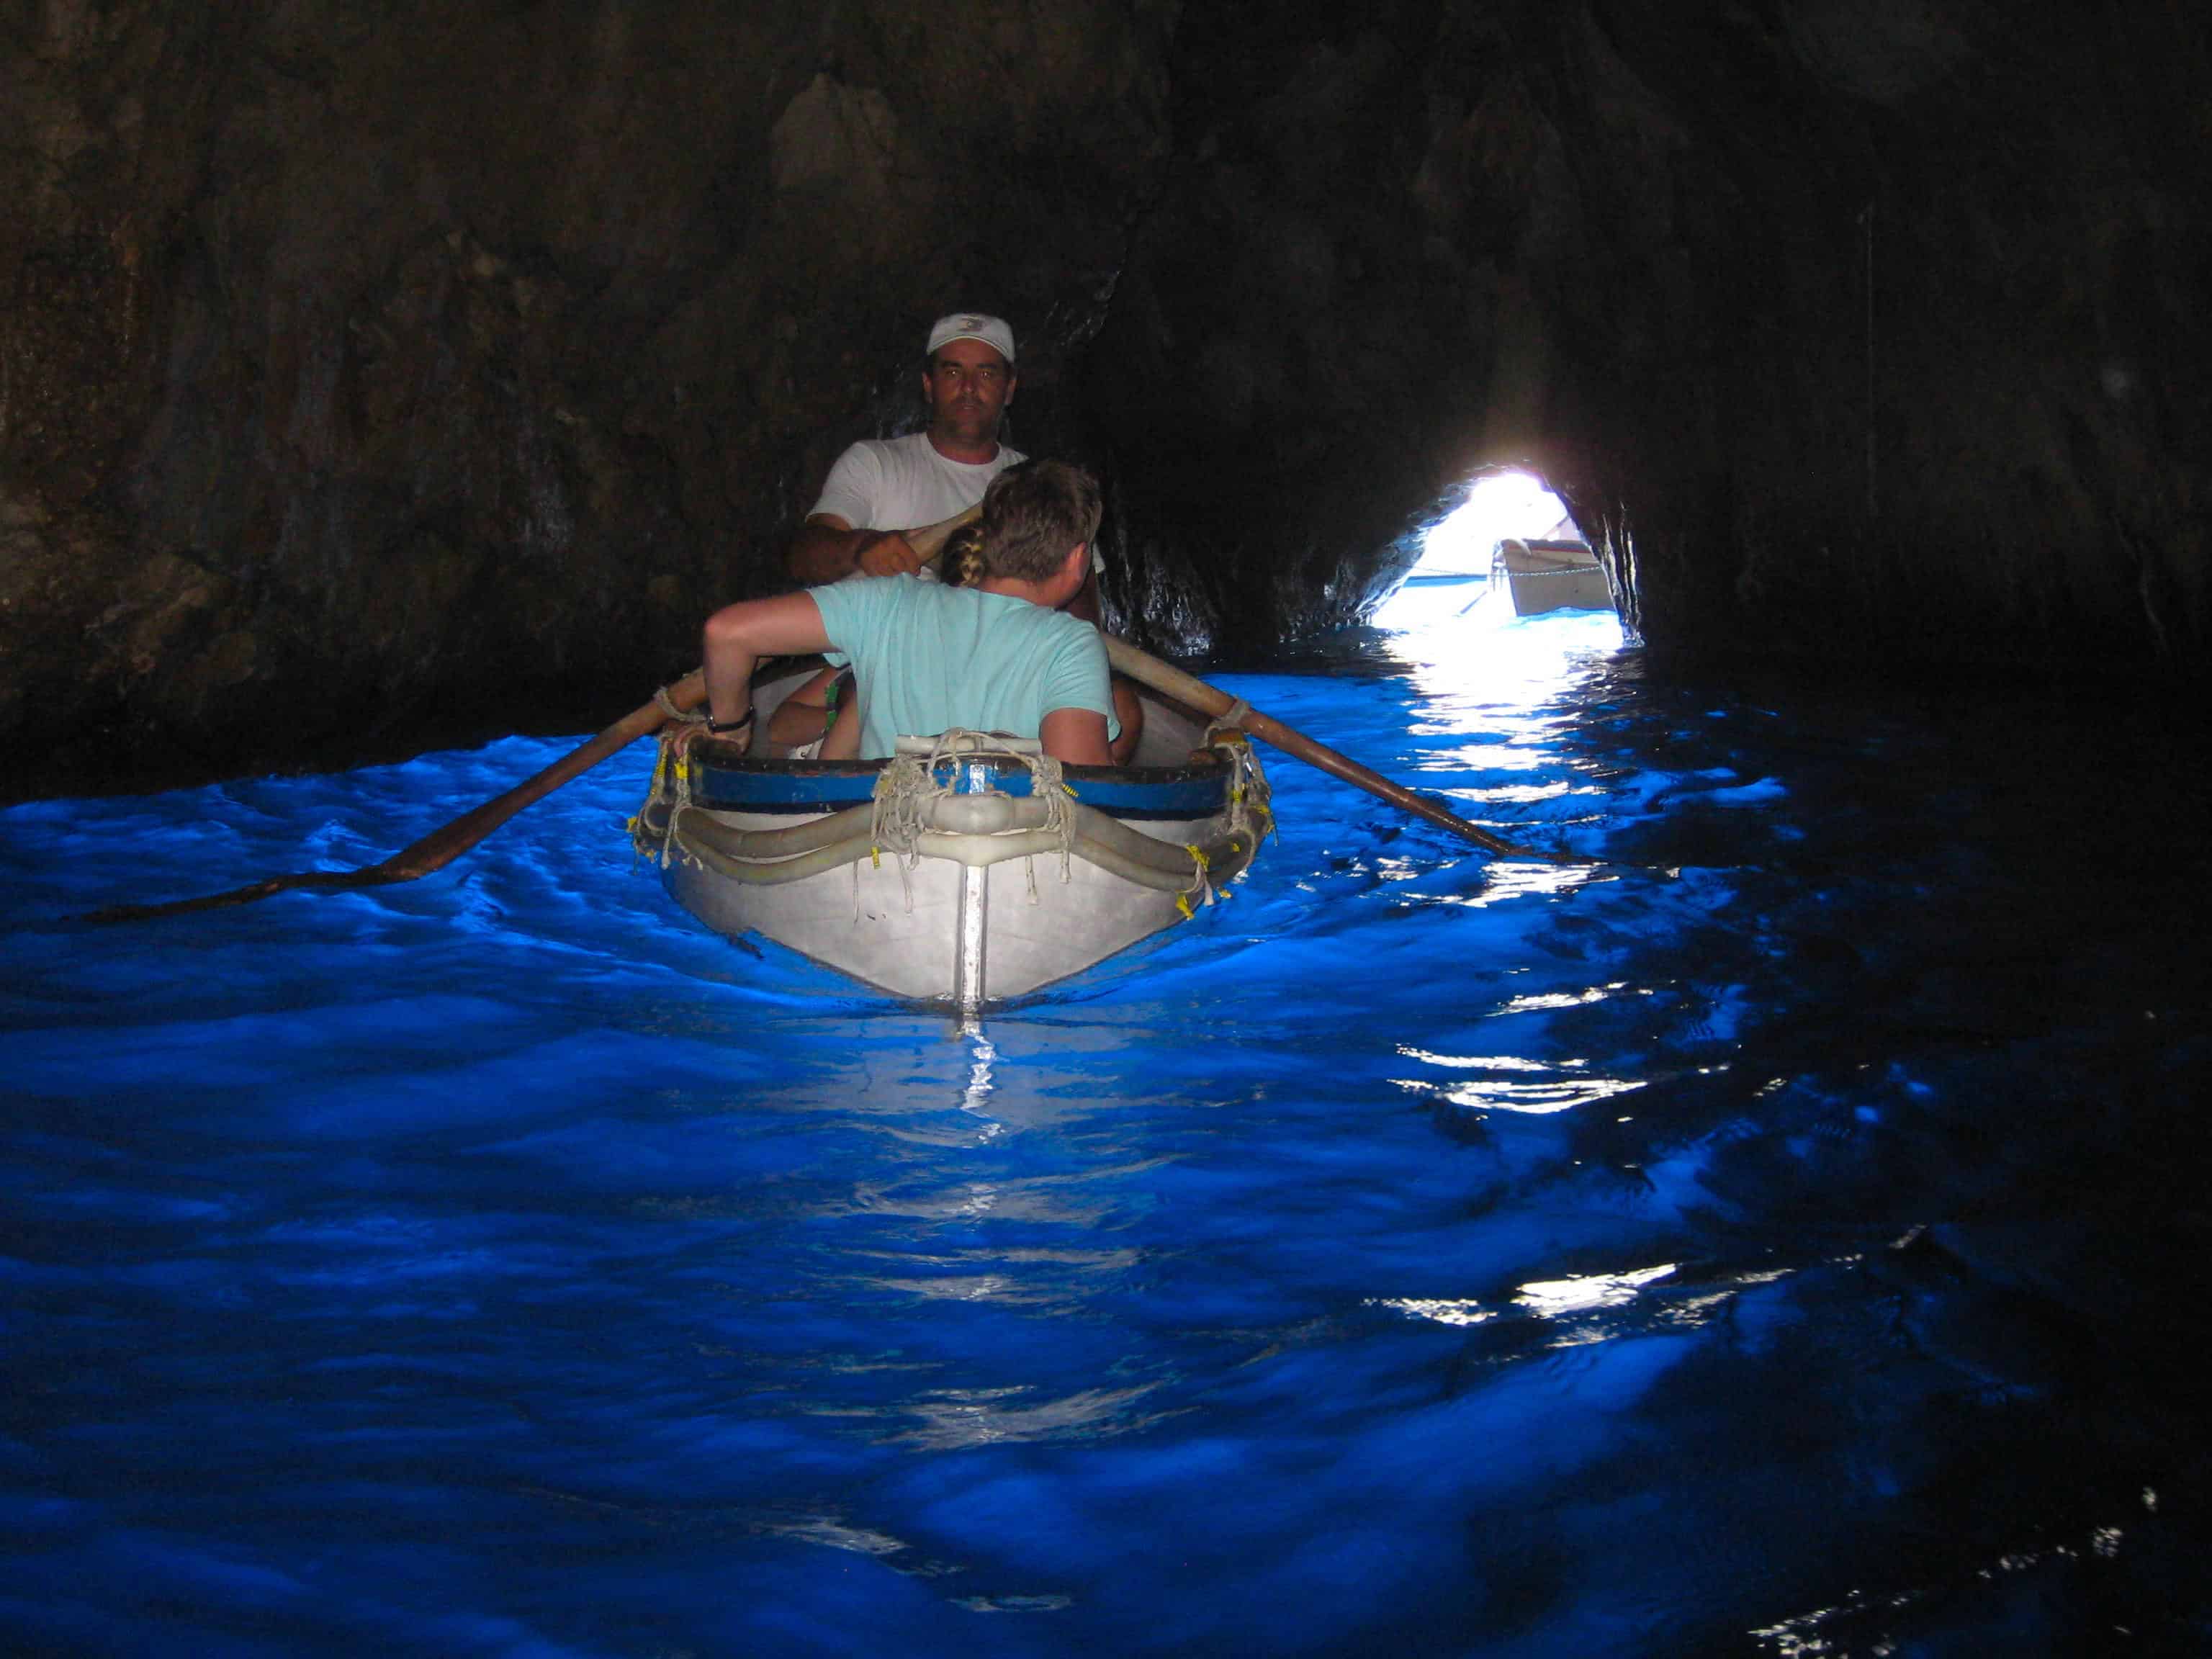 Capri Blue Grotto